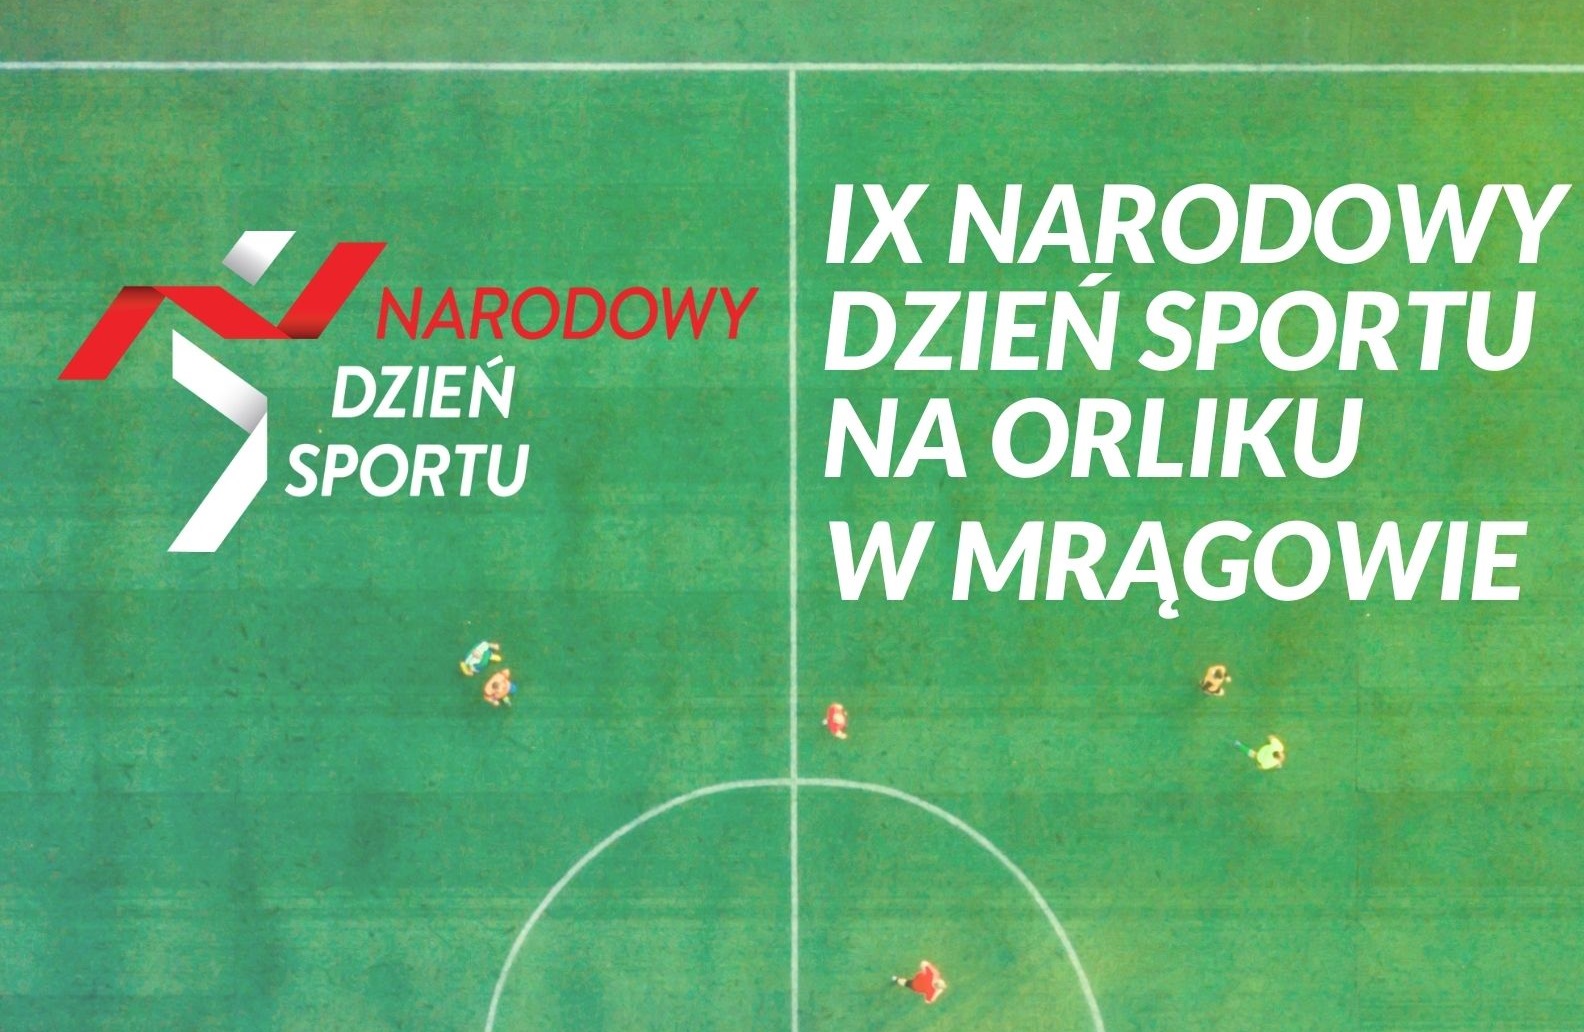 Obraz artykułu - Narodowy Dzień Sportu w Mrągowie. Przyjdź w sobotę na Orlik i spędź aktywnie popołudnie!